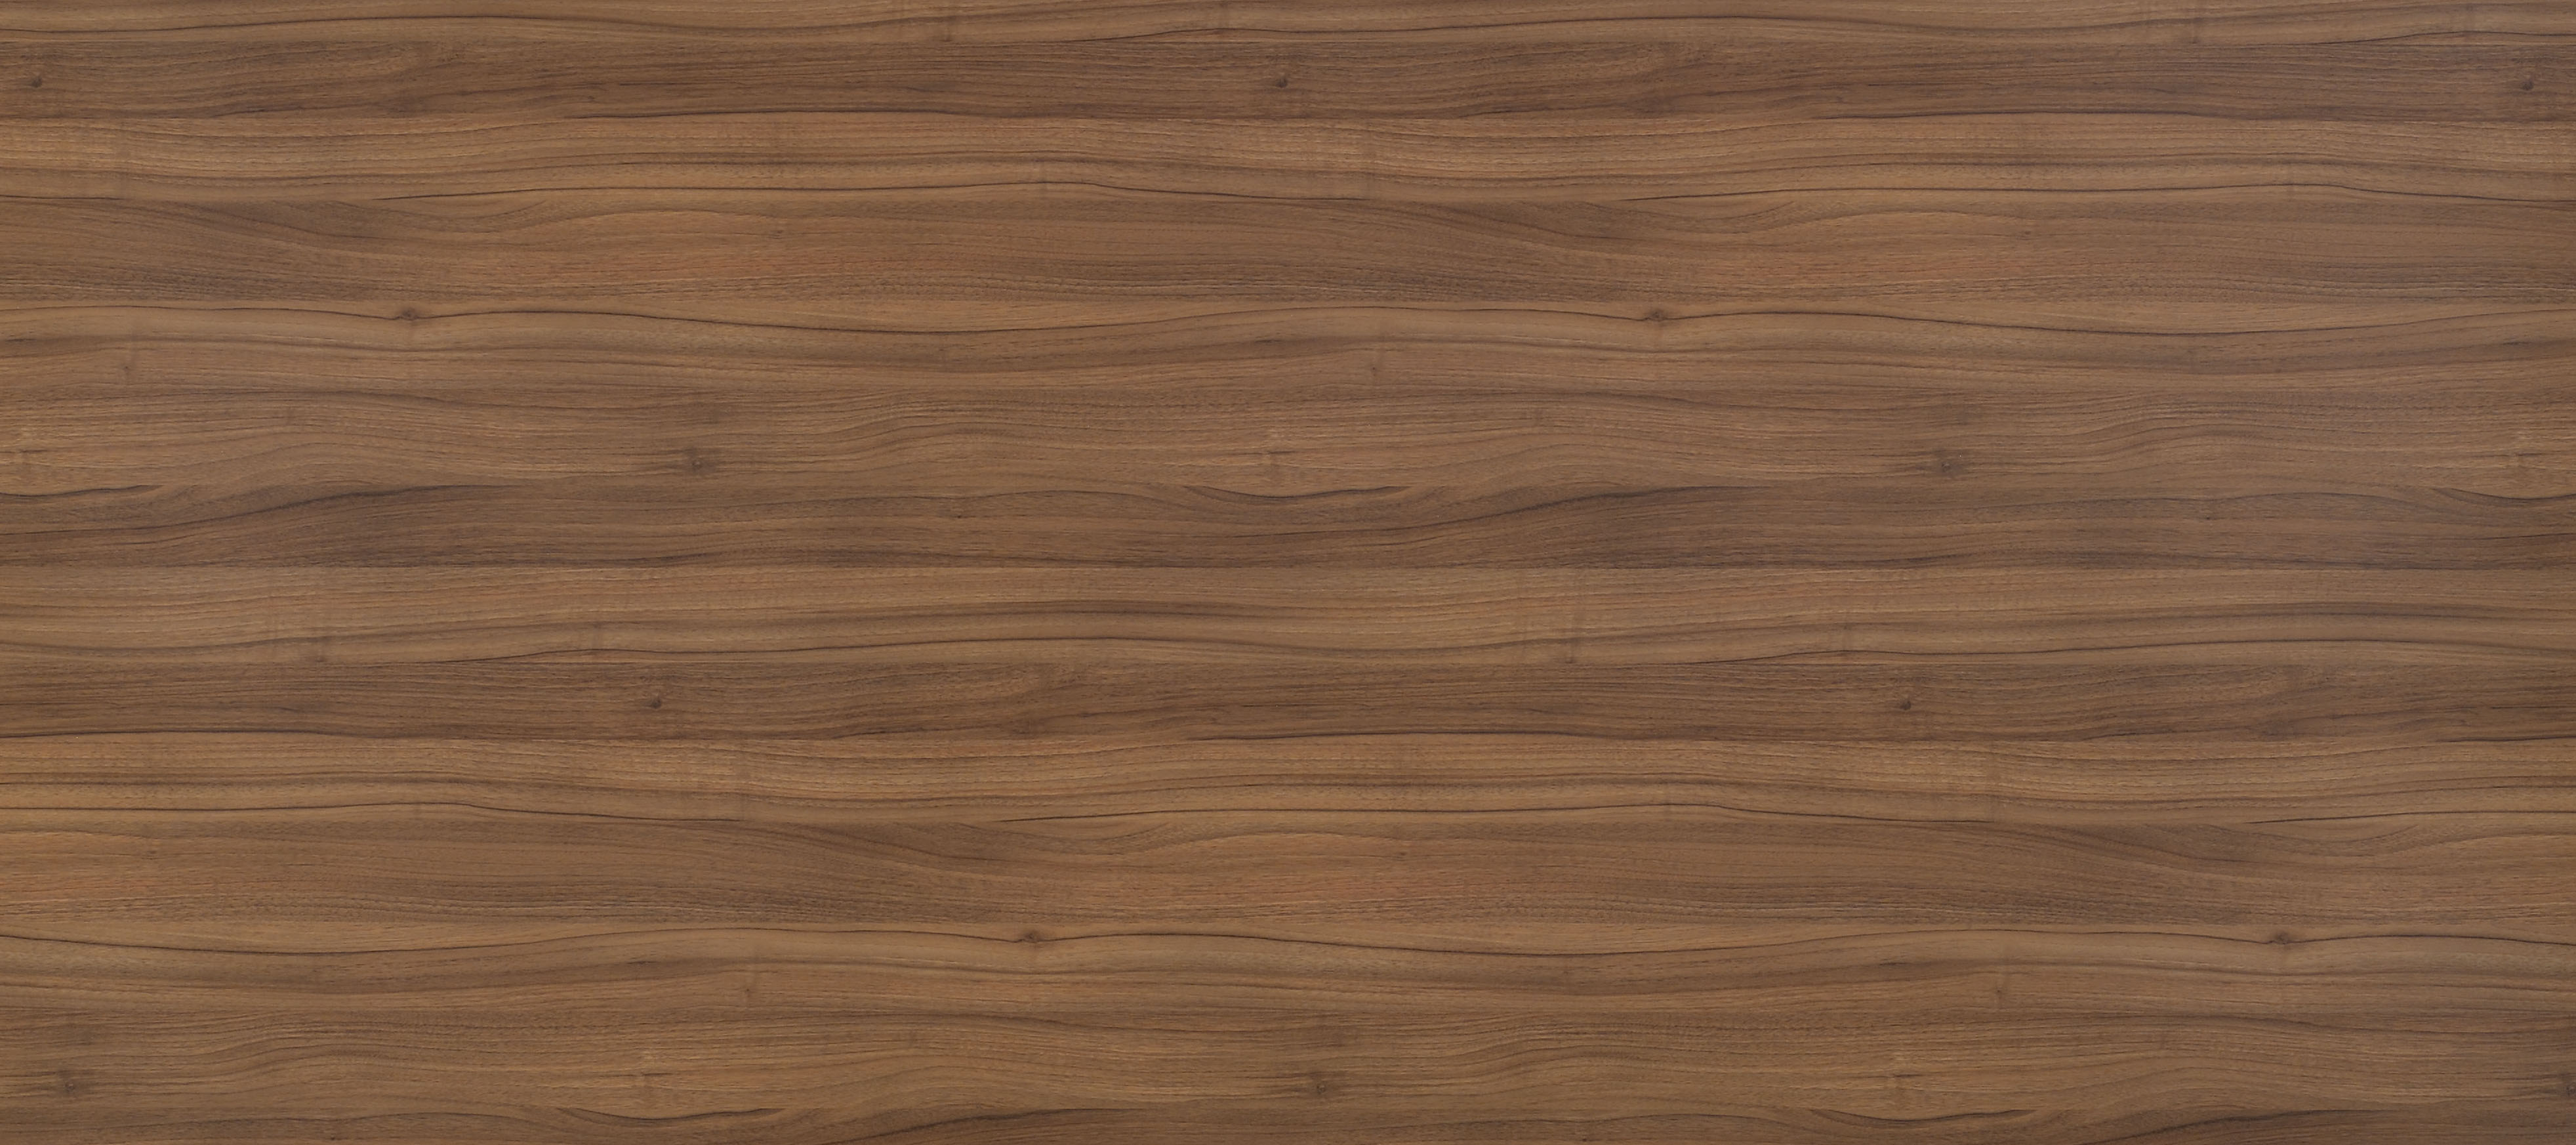 (3)松木纹贴图木板贴图 (72)老旧木板原木色材质贴图下载 松木(9)木纹